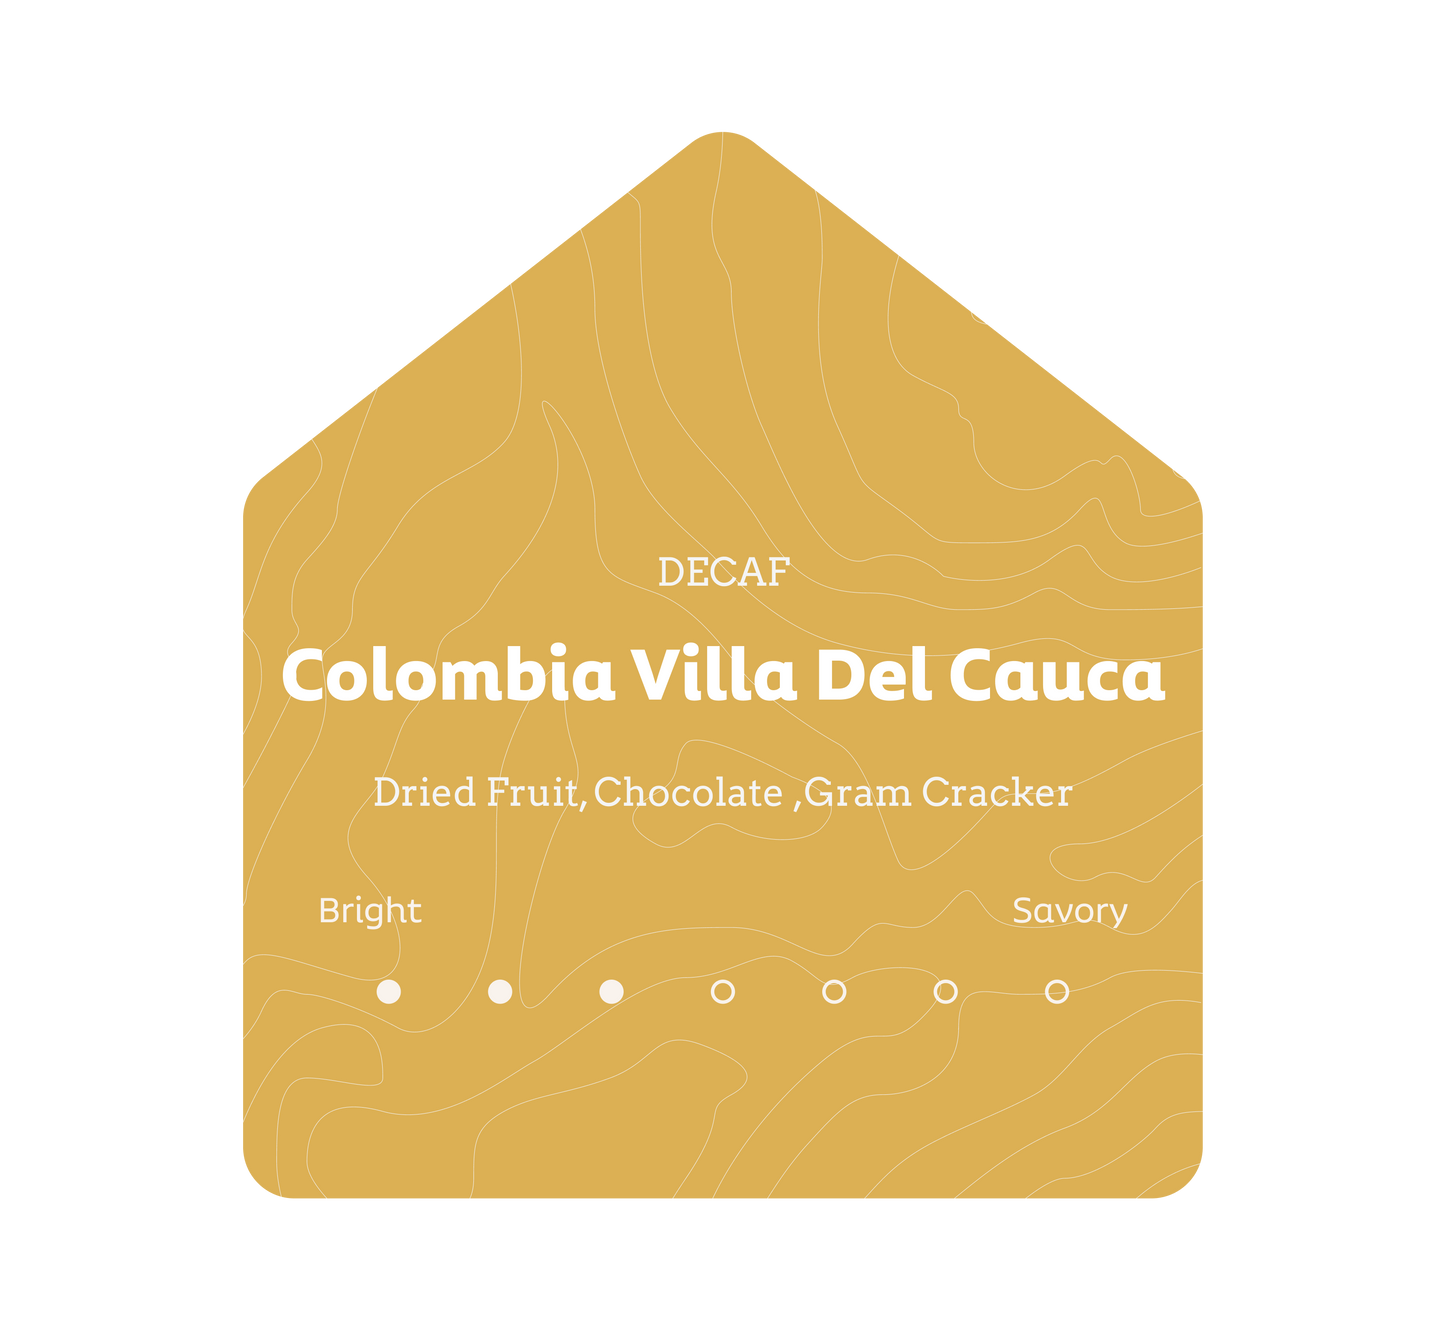 Decaf - Colombia Villa Del Cauca